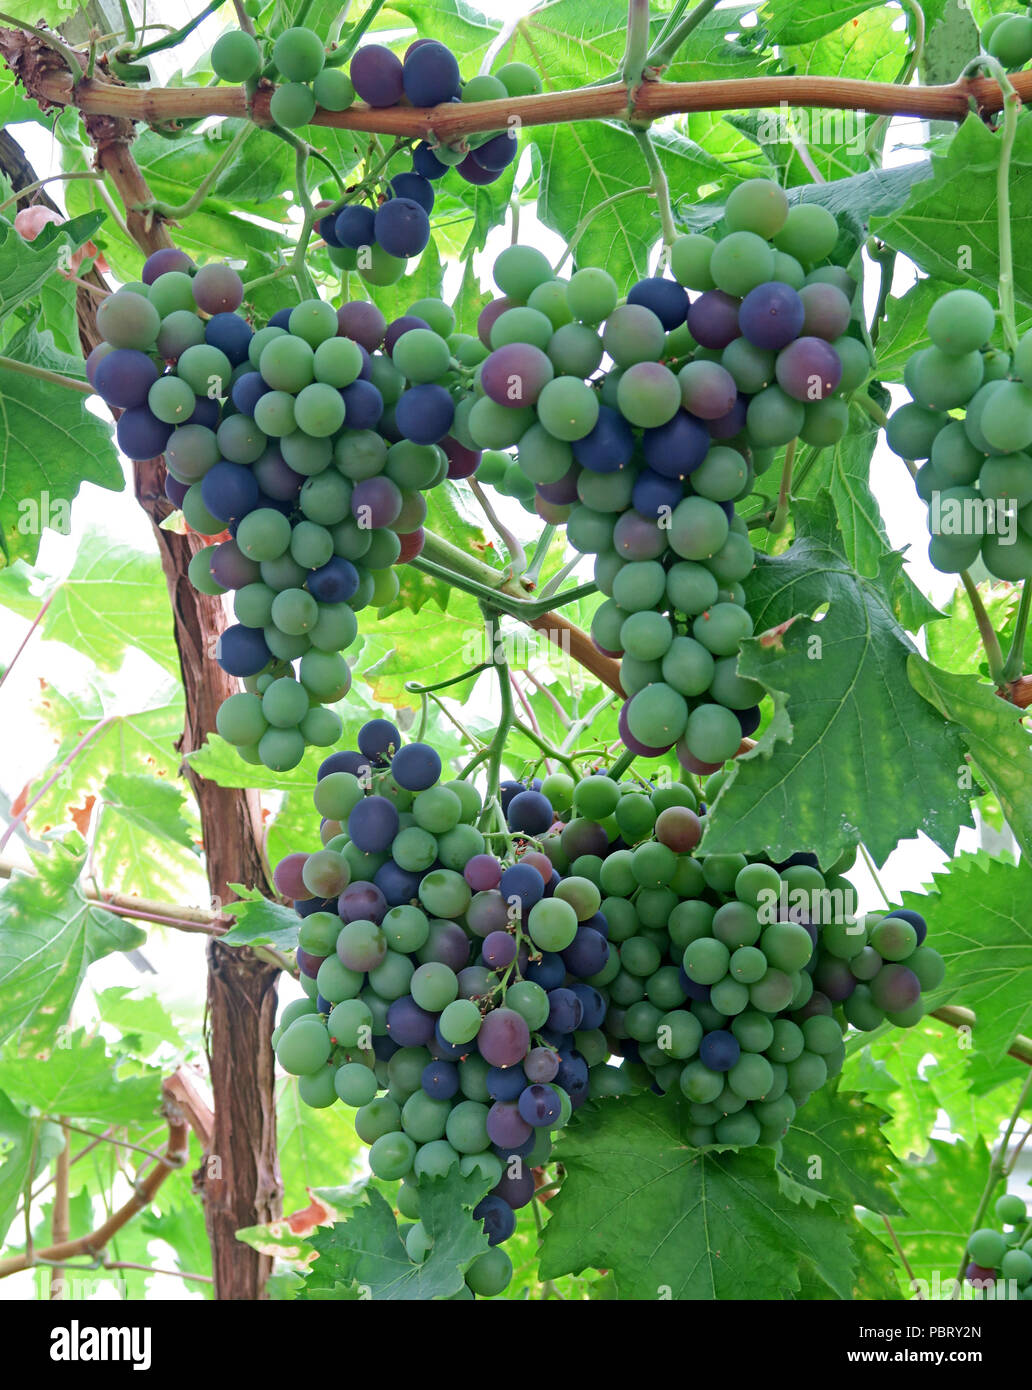 La maturation du raisin sur une vigne, Grappenhall Heys jardin clos, Warrington, Cheshire, North West England, UK Banque D'Images